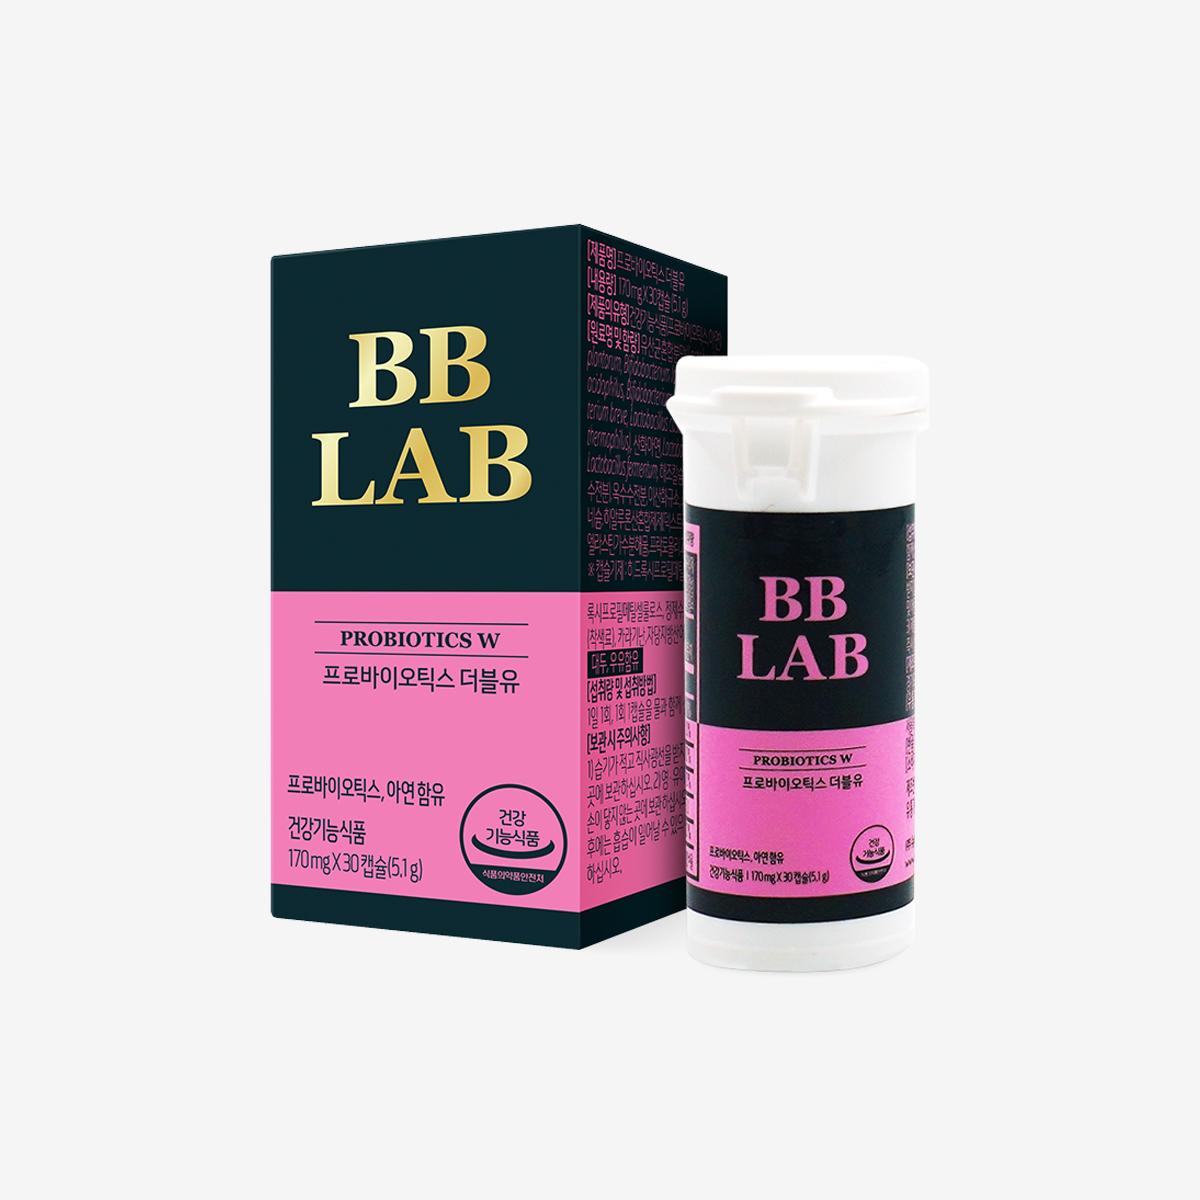 BB Lap Probiotics Double U (30 viên)